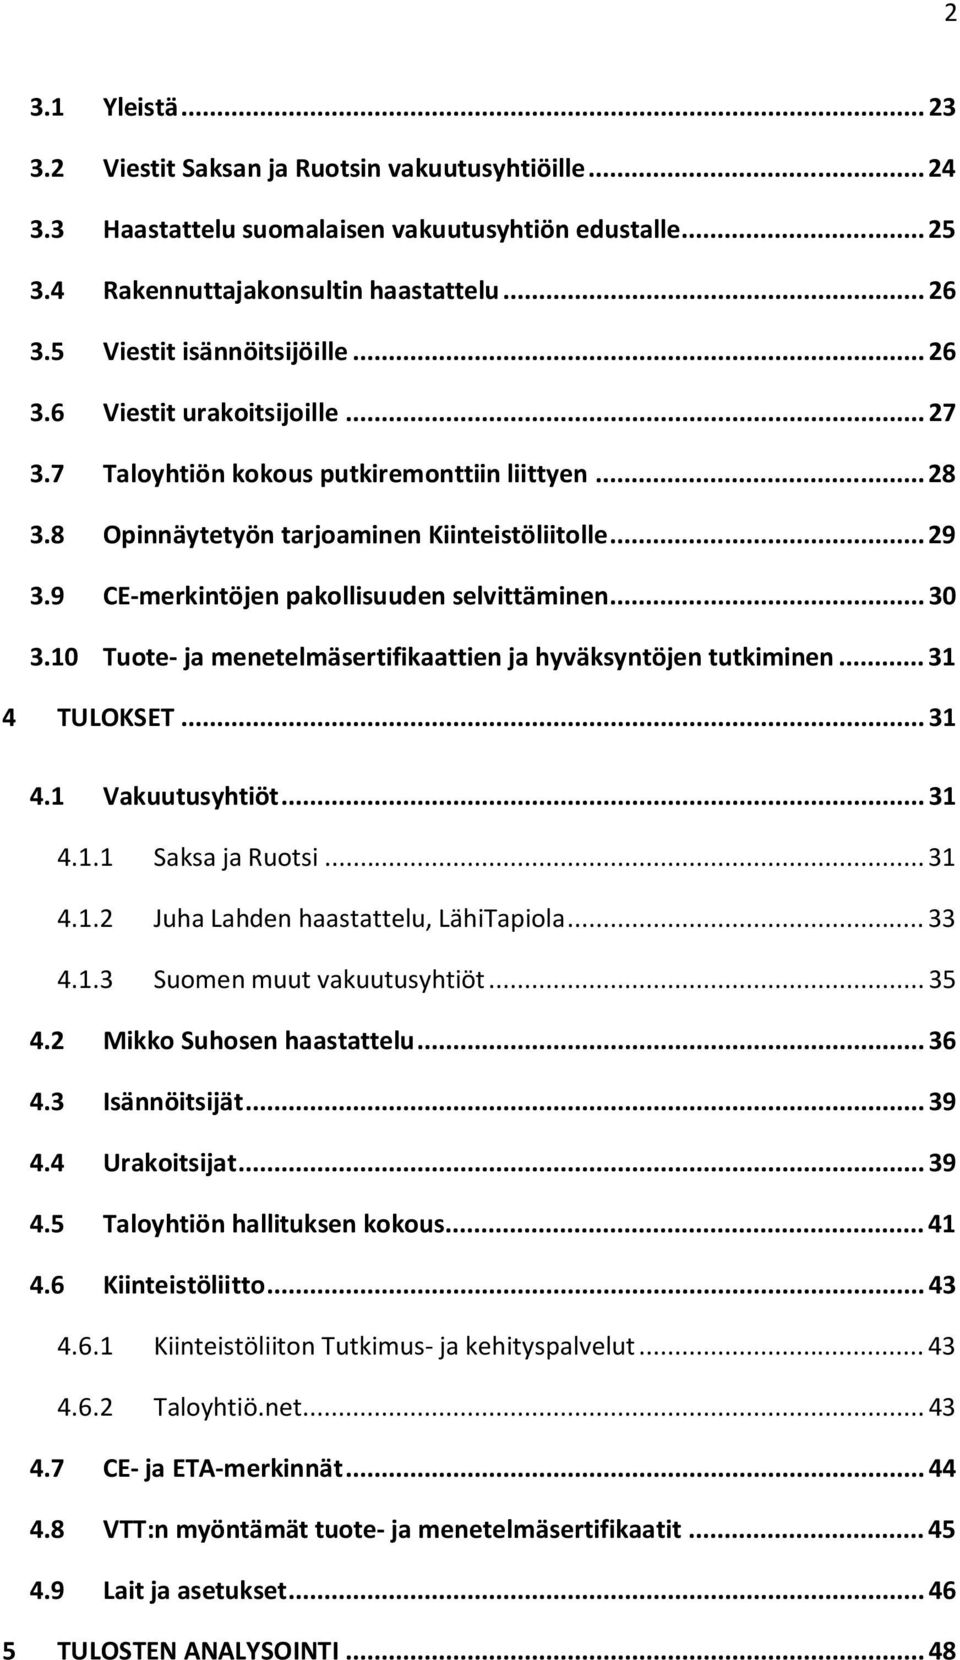 9 CE-merkintöjen pakollisuuden selvittäminen... 30 3.10 Tuote- ja menetelmäsertifikaattien ja hyväksyntöjen tutkiminen... 31 4 TULOKSET... 31 4.1 Vakuutusyhtiöt... 31 4.1.1 Saksa ja Ruotsi... 31 4.1.2 Juha Lahden haastattelu, LähiTapiola.